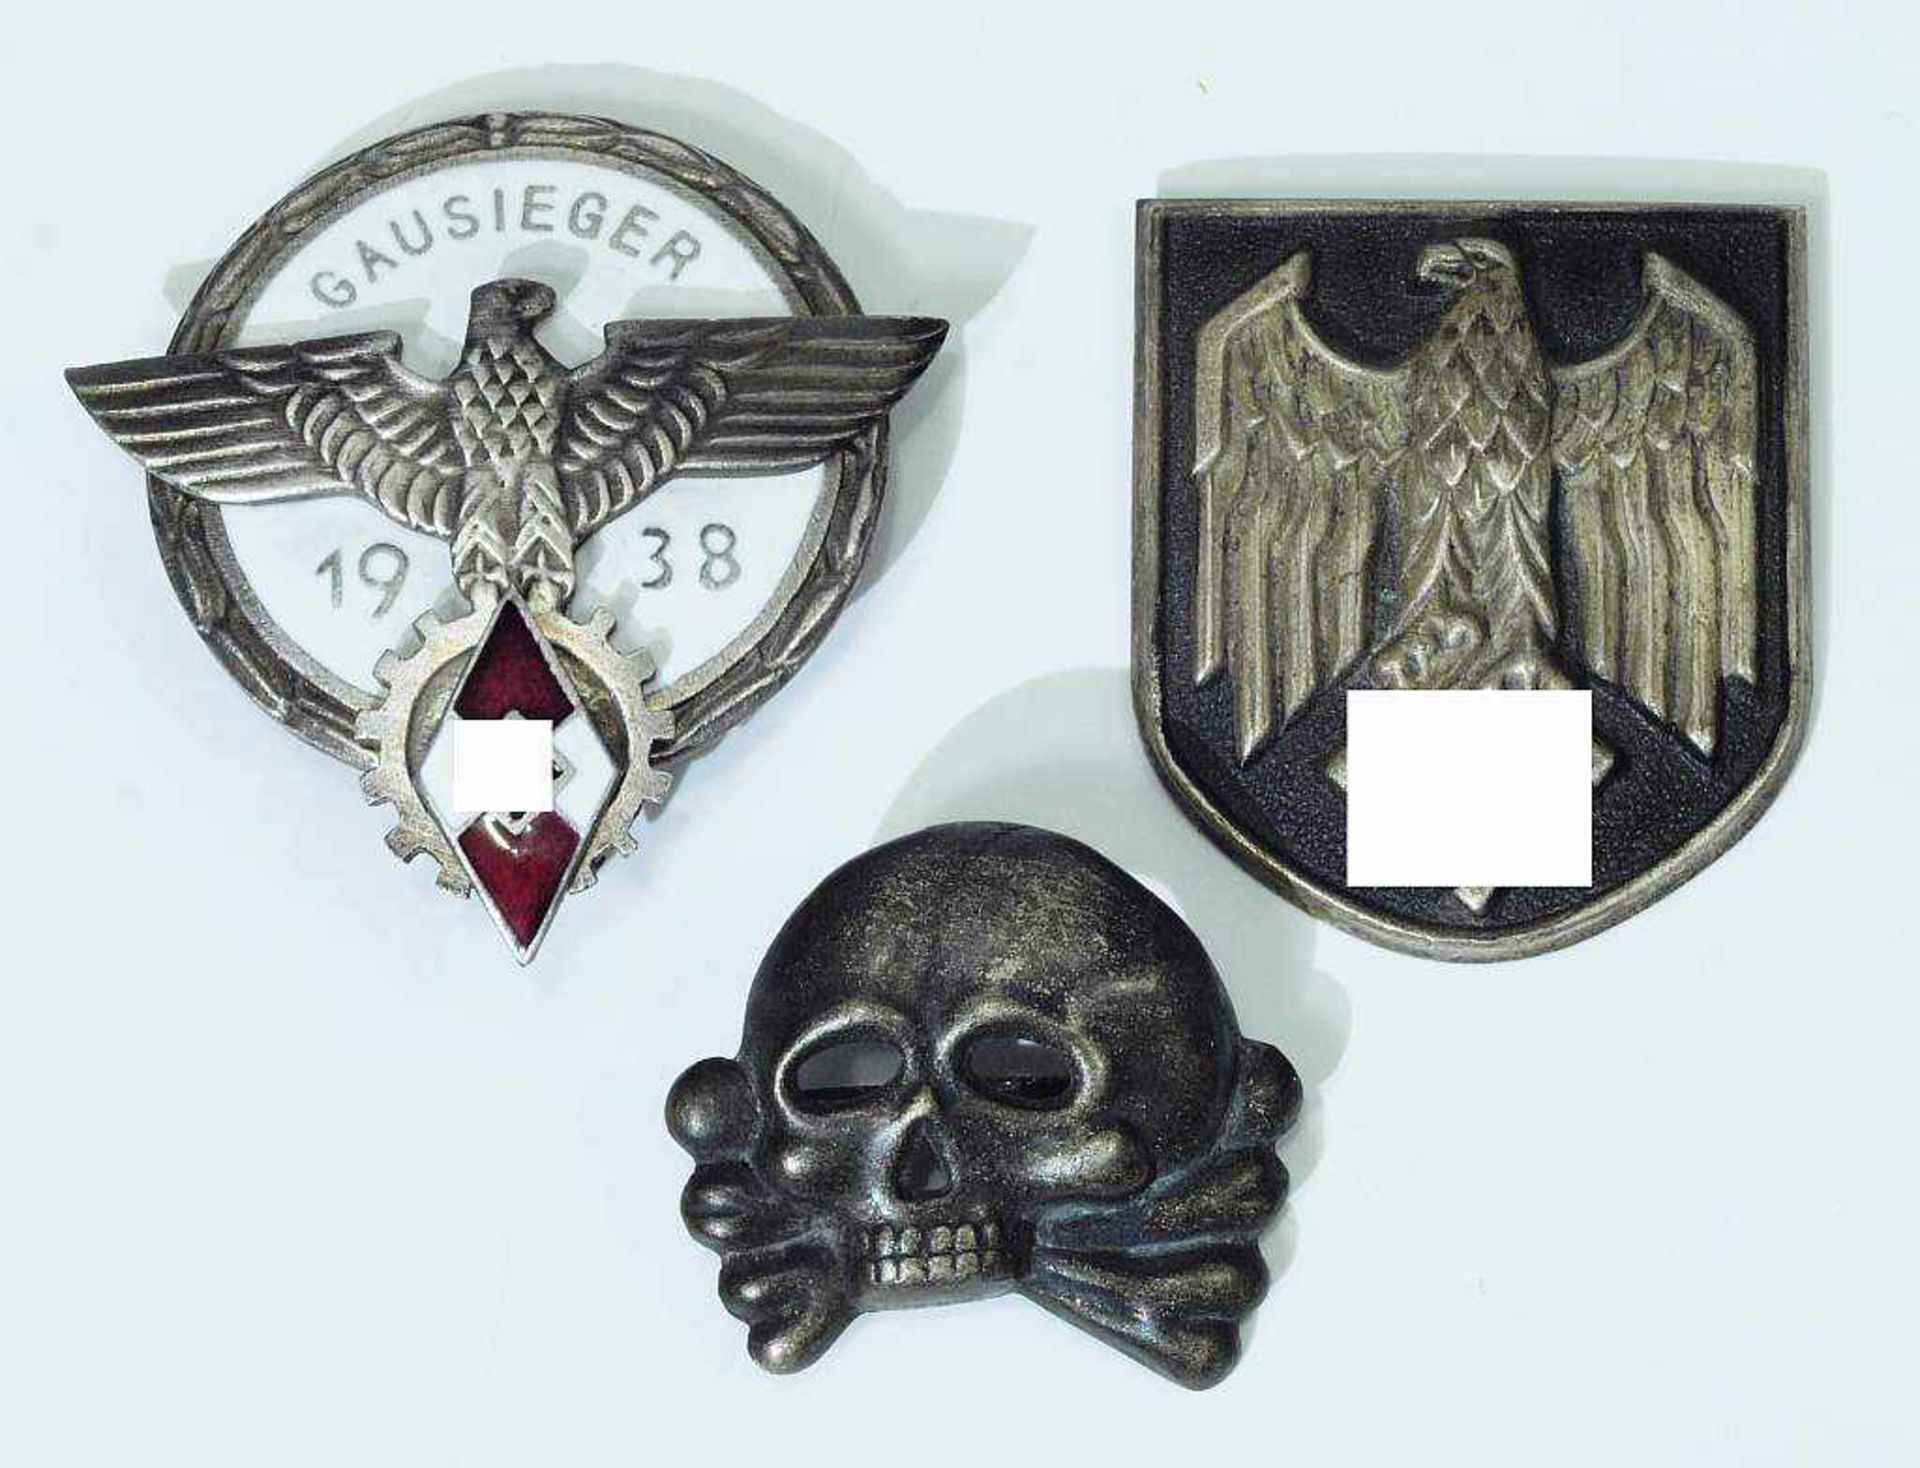 HJ - Gausieger-Abzeichen 1938. HJ - Gausieger-Abzeichen 1938 mit Hersteller G.Brehmer - Bild 2 aus 4